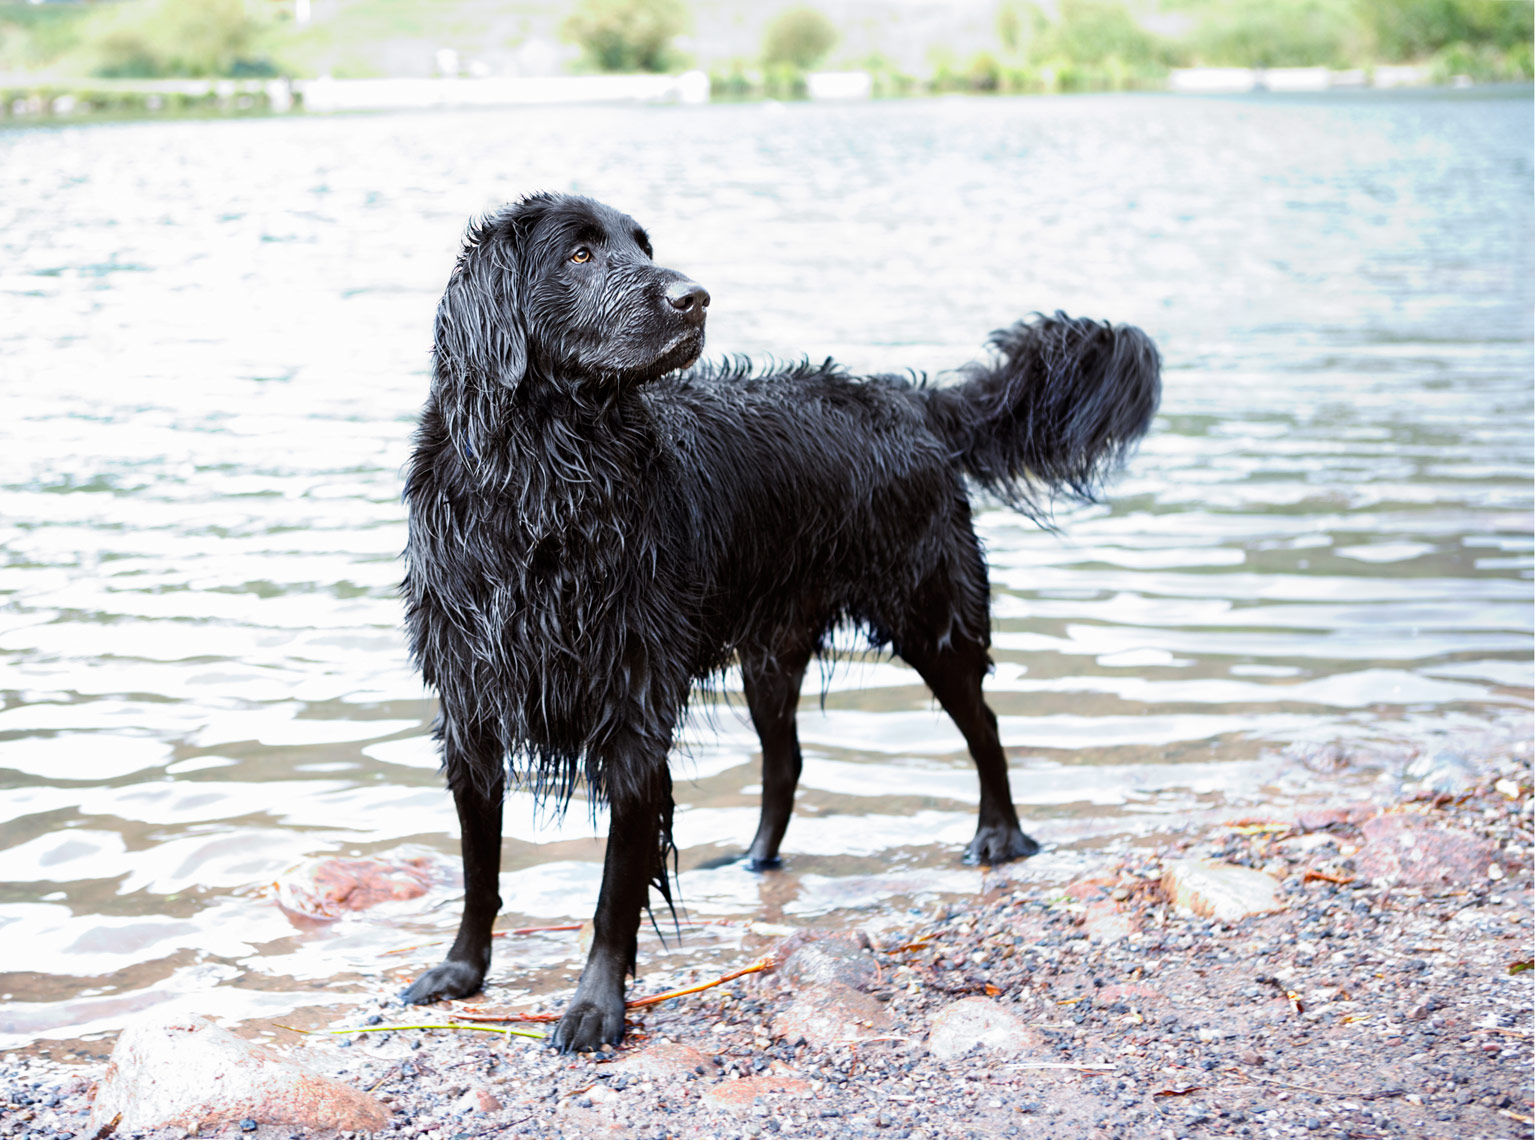 Wet dog at lake